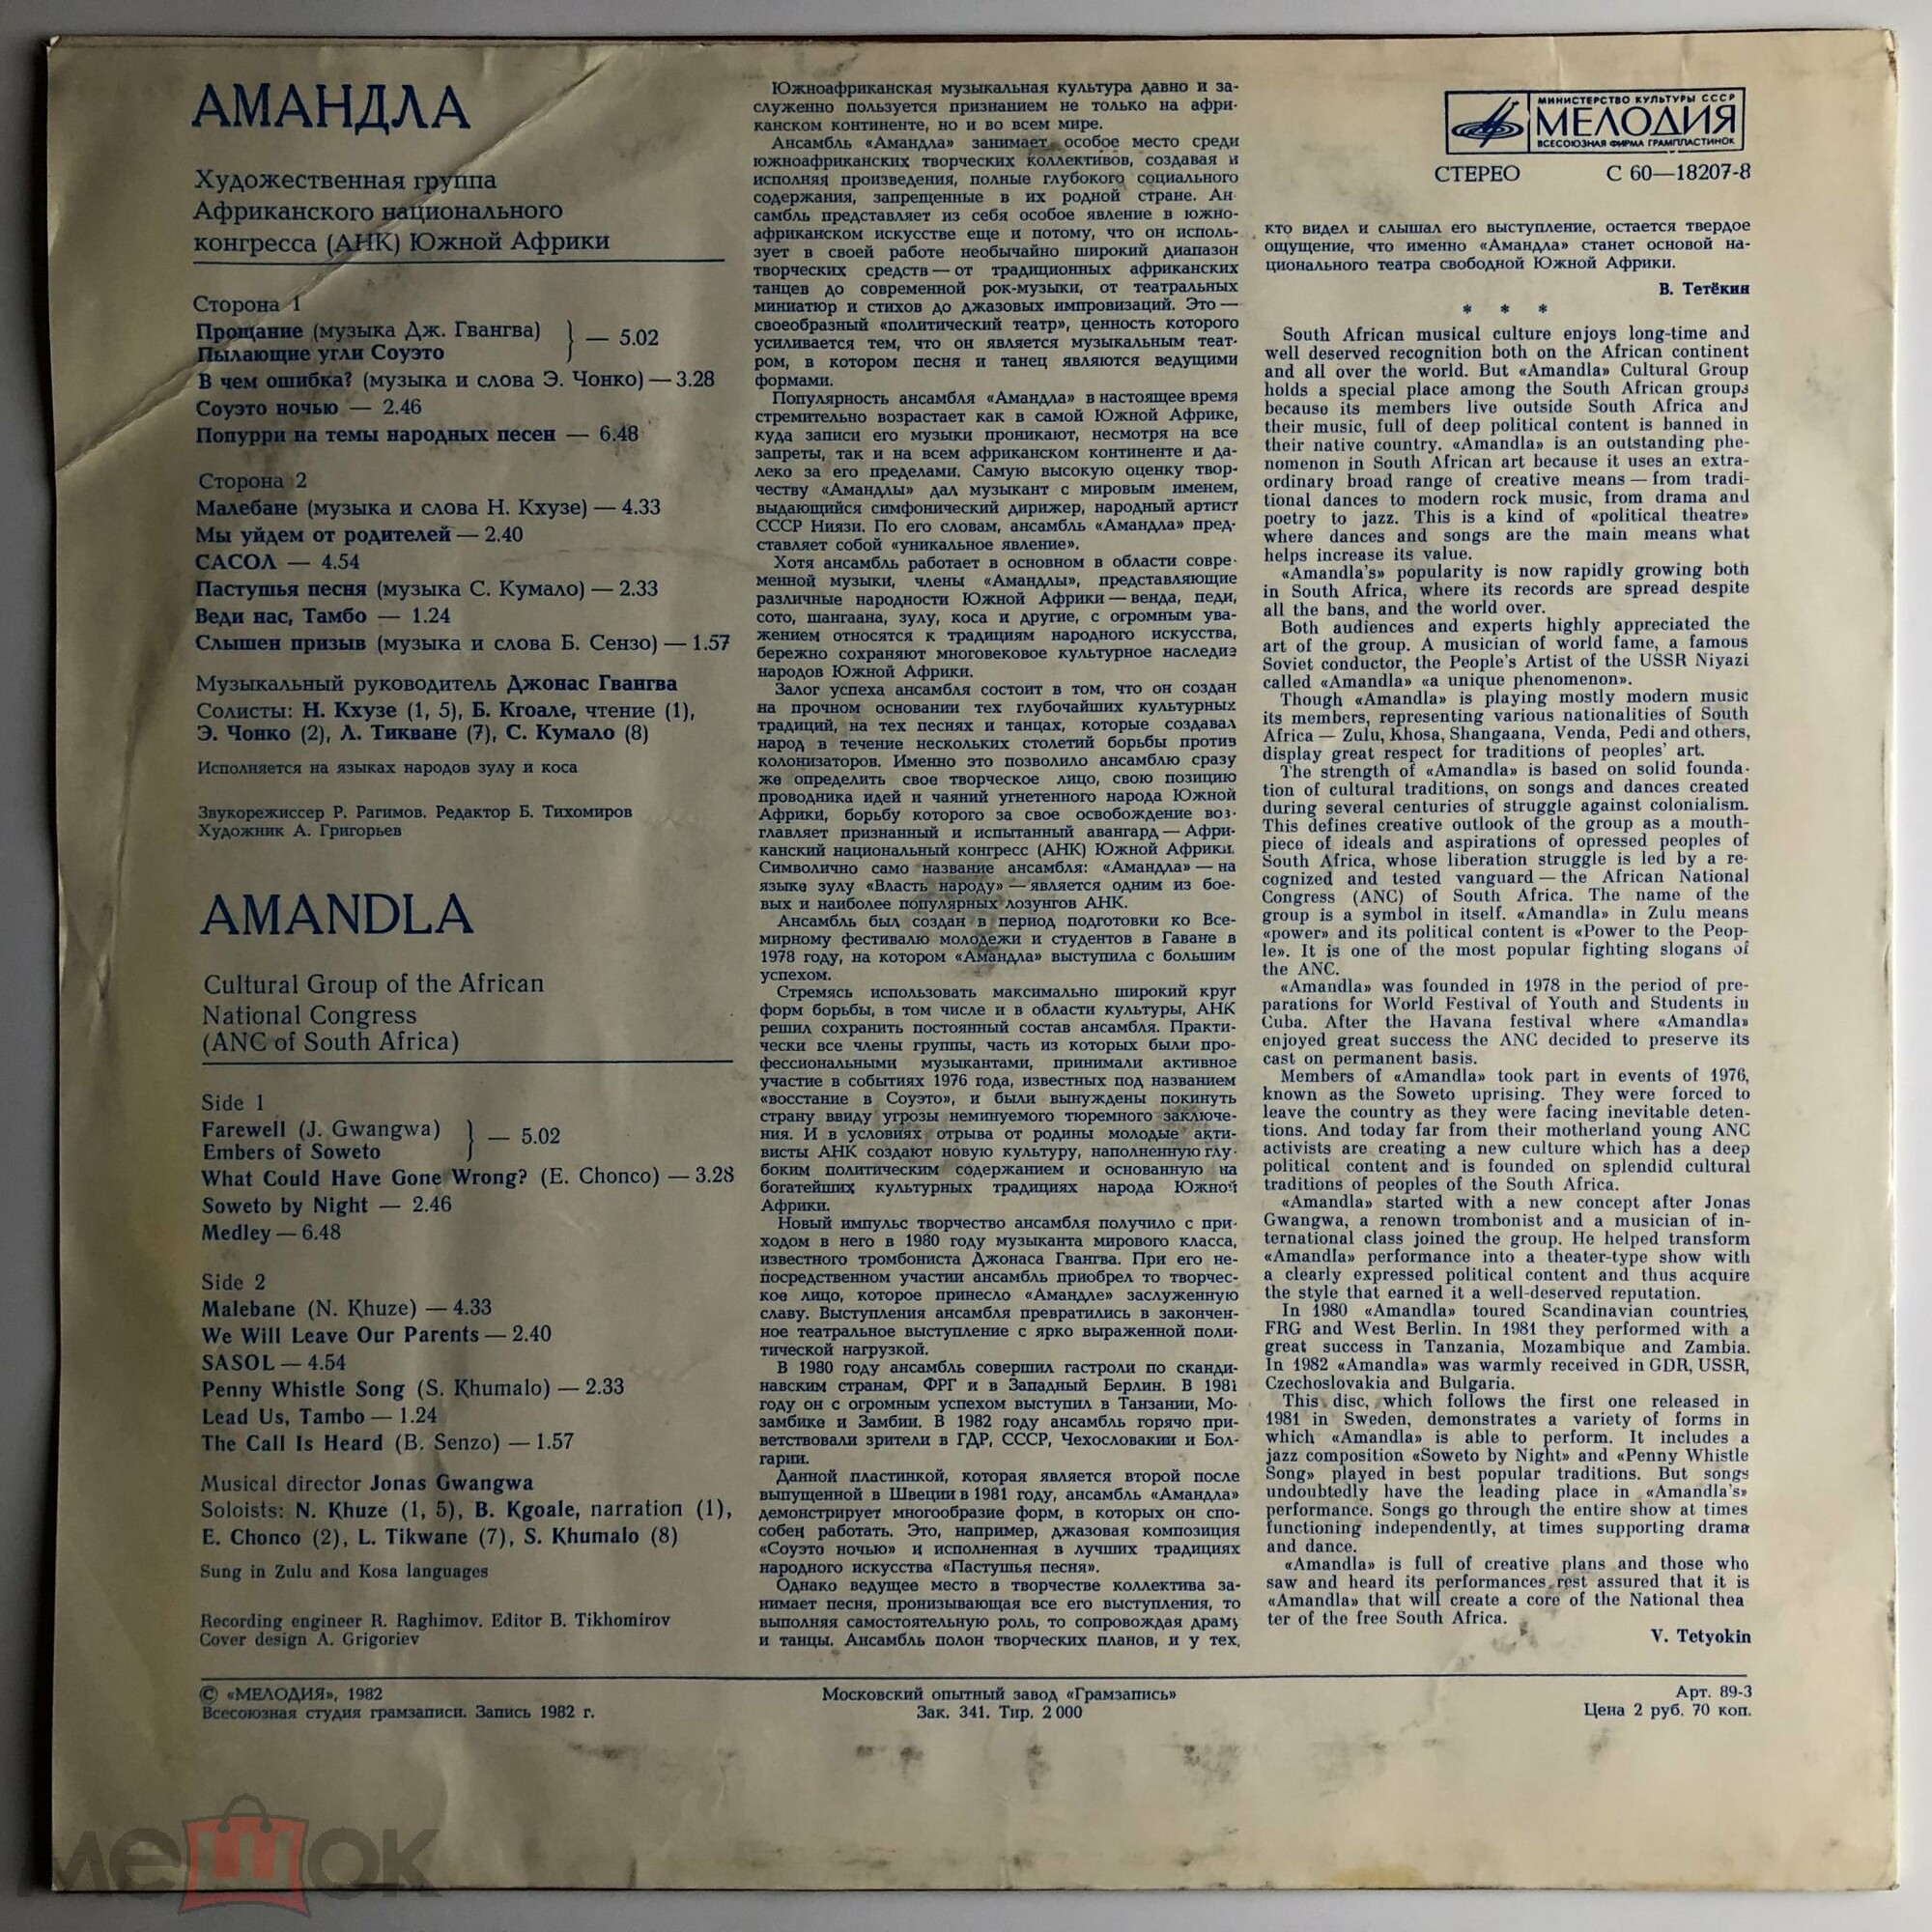 «АМАНДЛА», художественная группа Африканского национального конгресса (АНК Южной Африки), муз. рук. Джонас Гвангва.